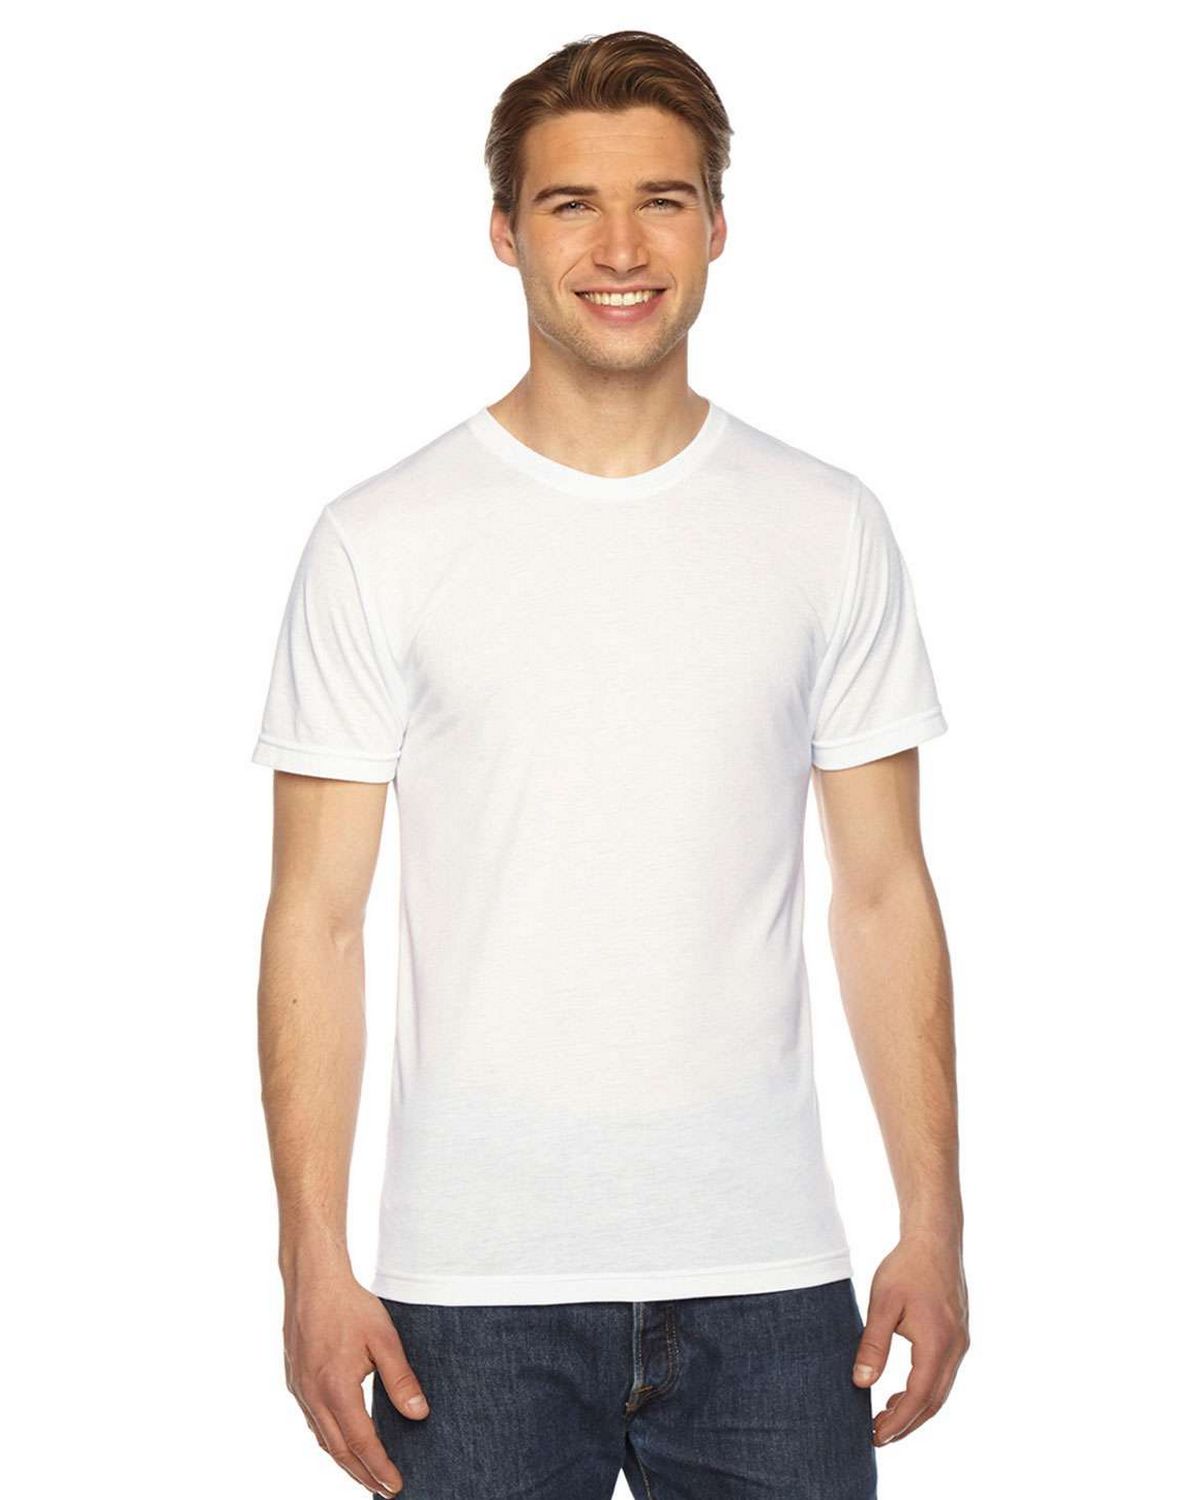 American Apparel PL401W Unisex Sublimation T-Shirt